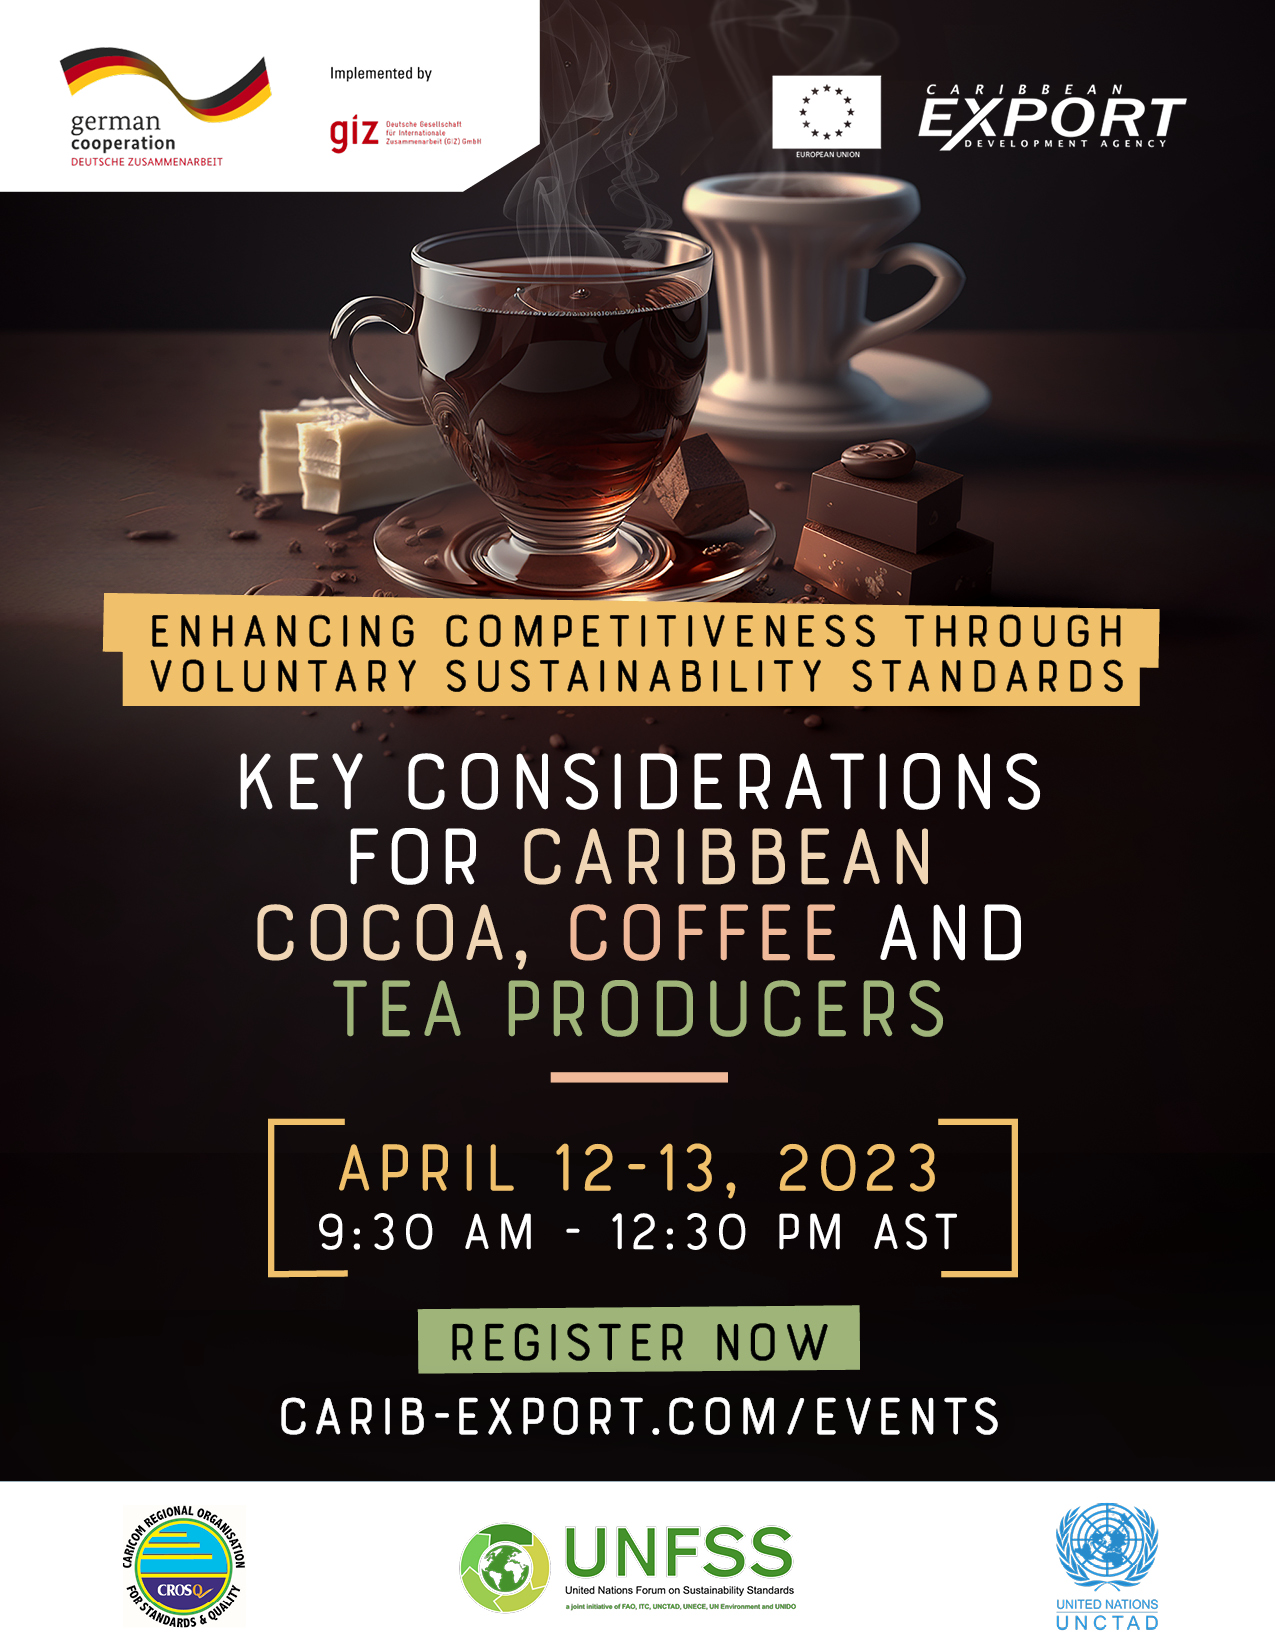 Améliorer la compétitivité grâce à des normes volontaires de durabilité : Considérations clés pour les producteurs de cacao, de café et de thé des Caraïbes